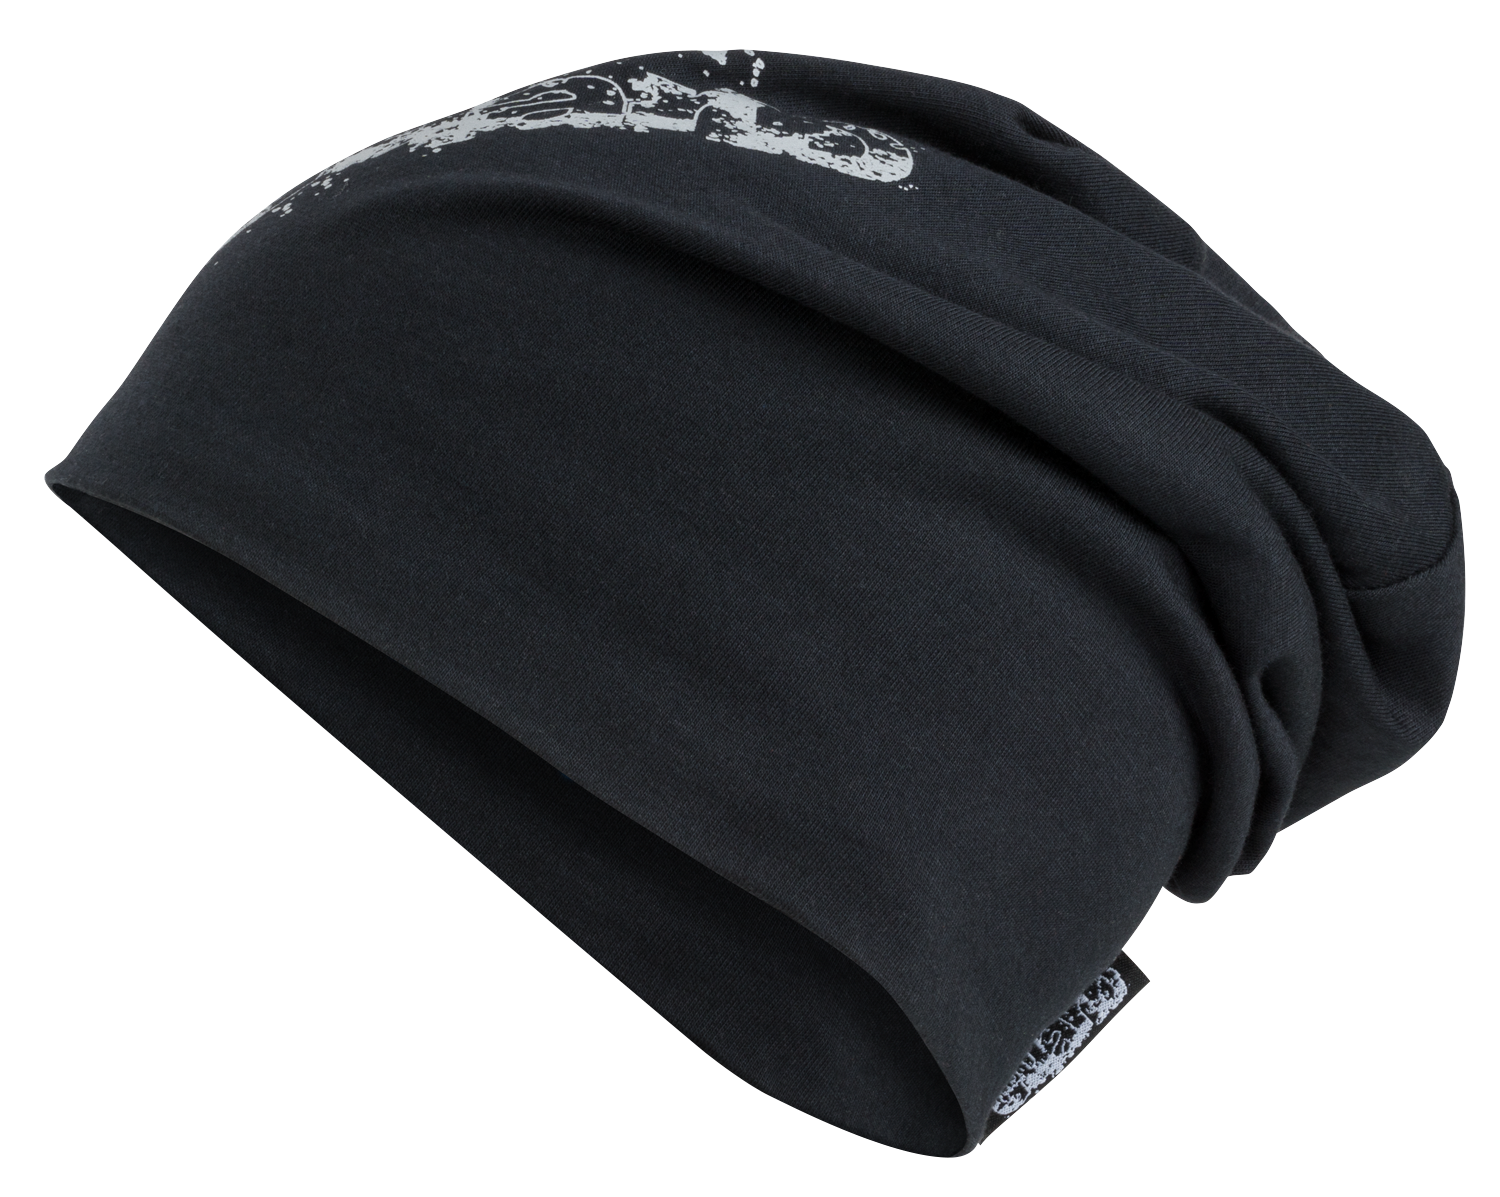 bonnet réversible, casquette, casquette de sport réfléchissante noir-argent